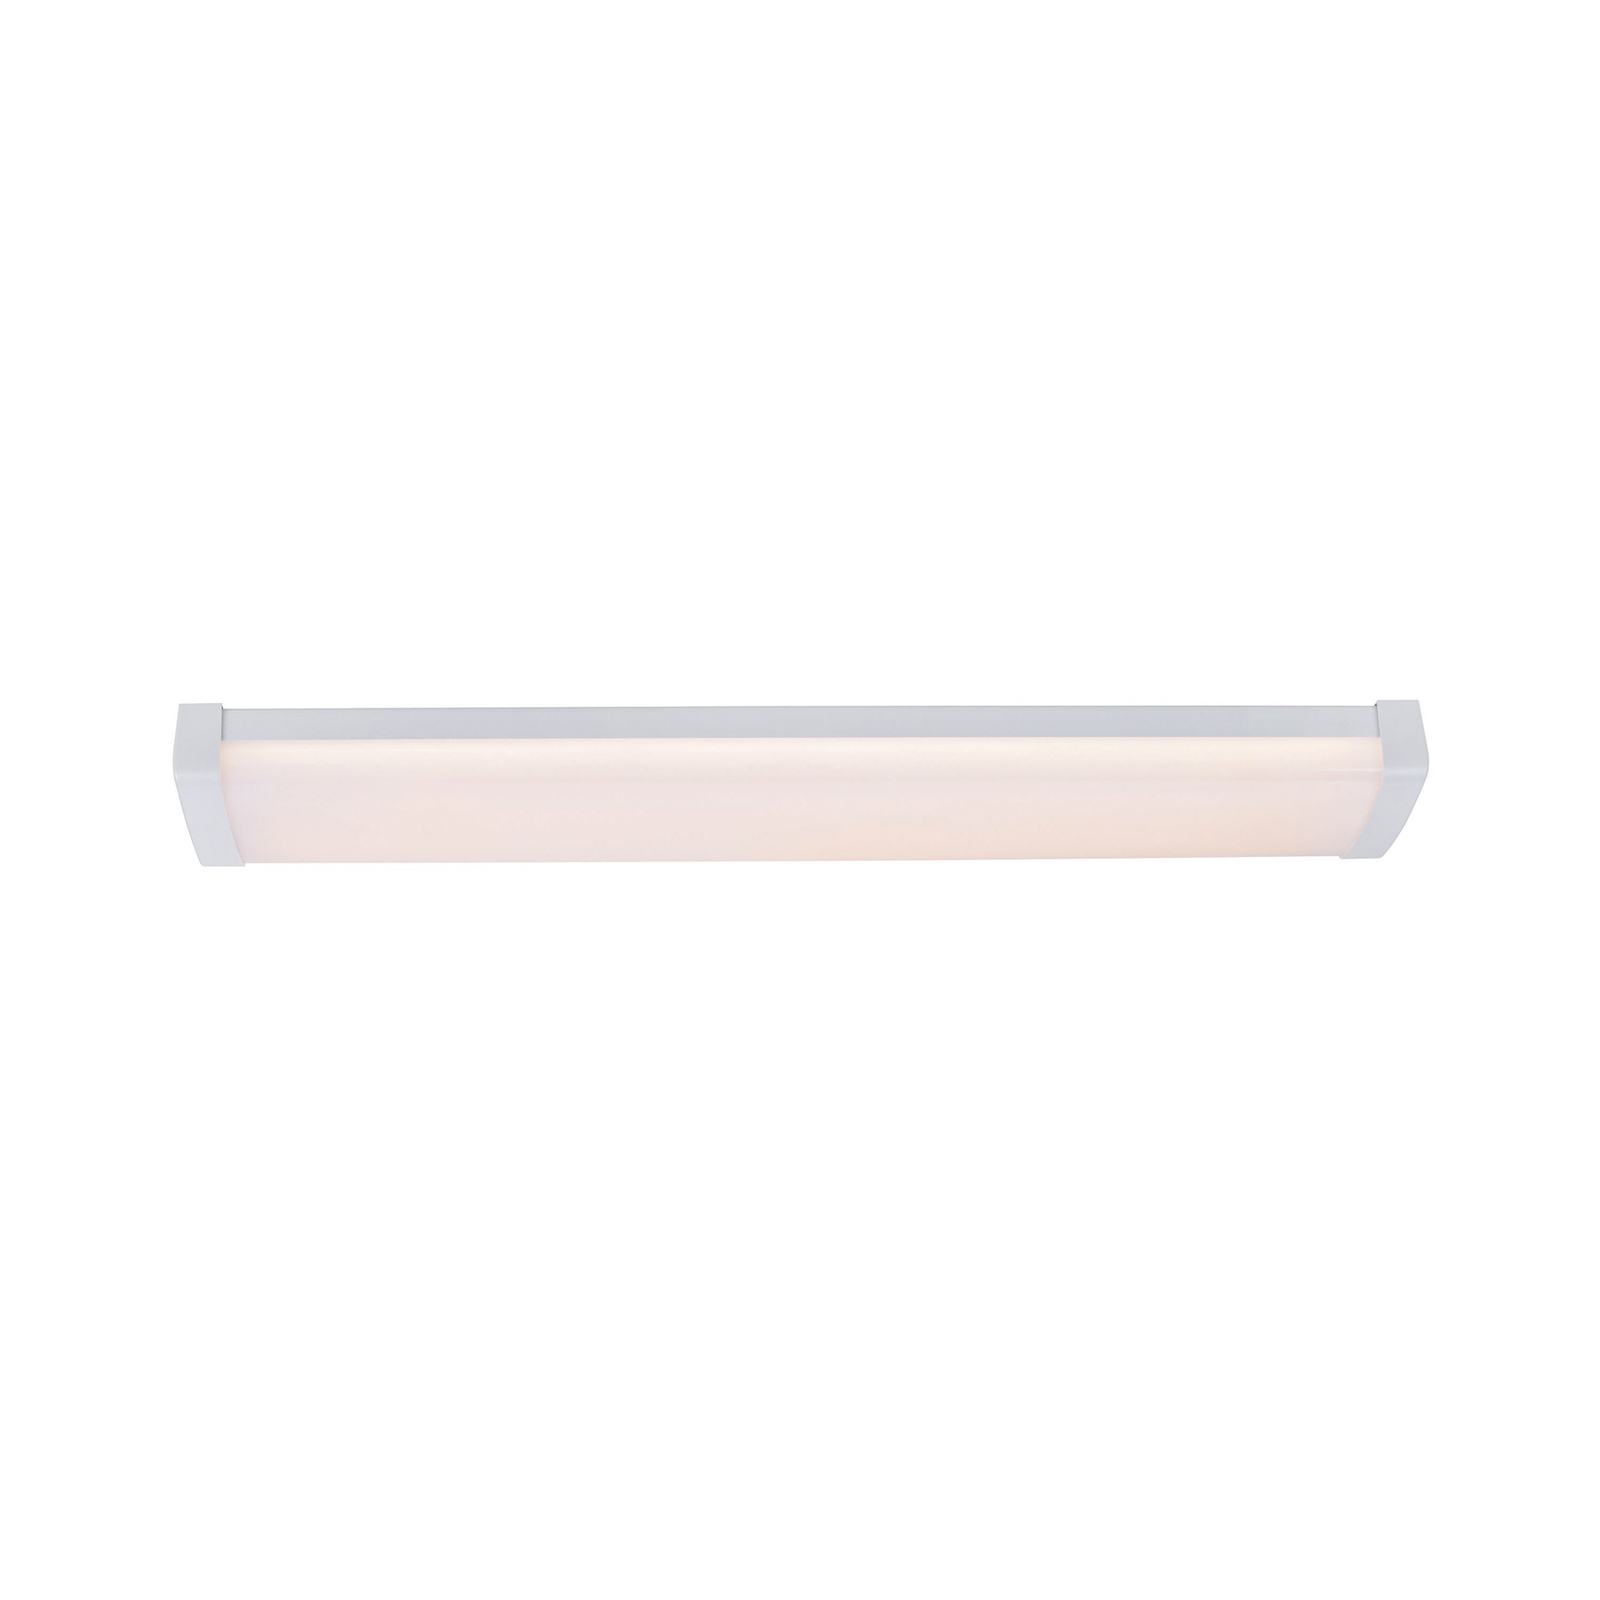 Wilmington LED fénycsík, 60,5 cm hosszú, fehér, műanyagból készült